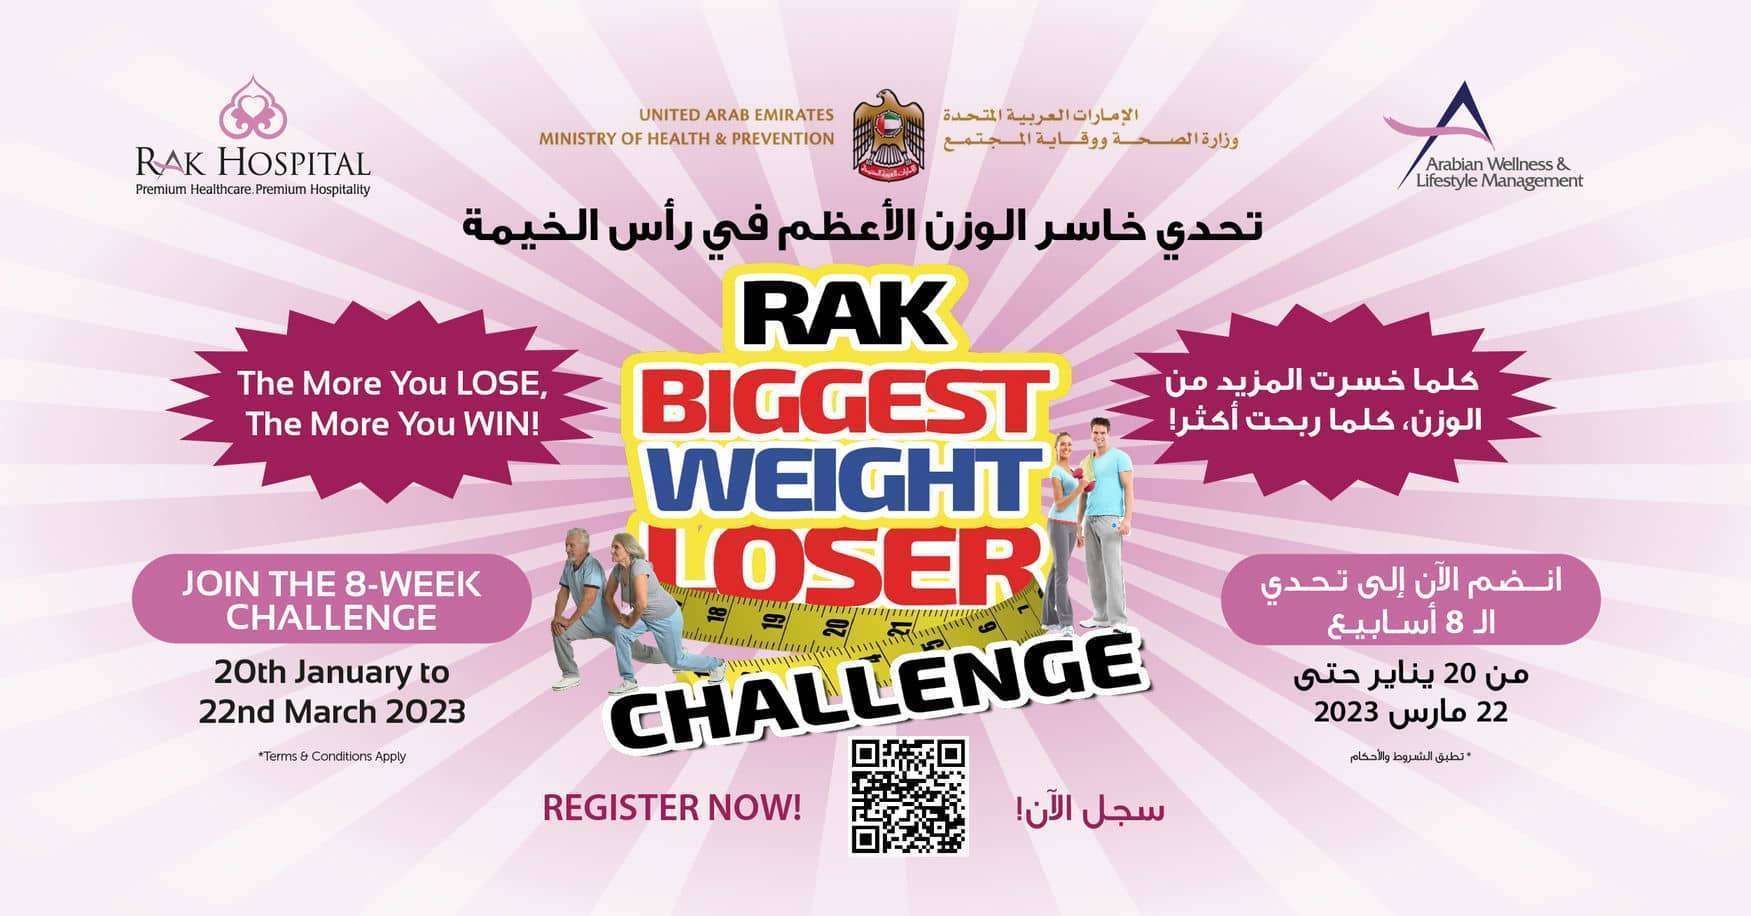 Weight Loser Challenge